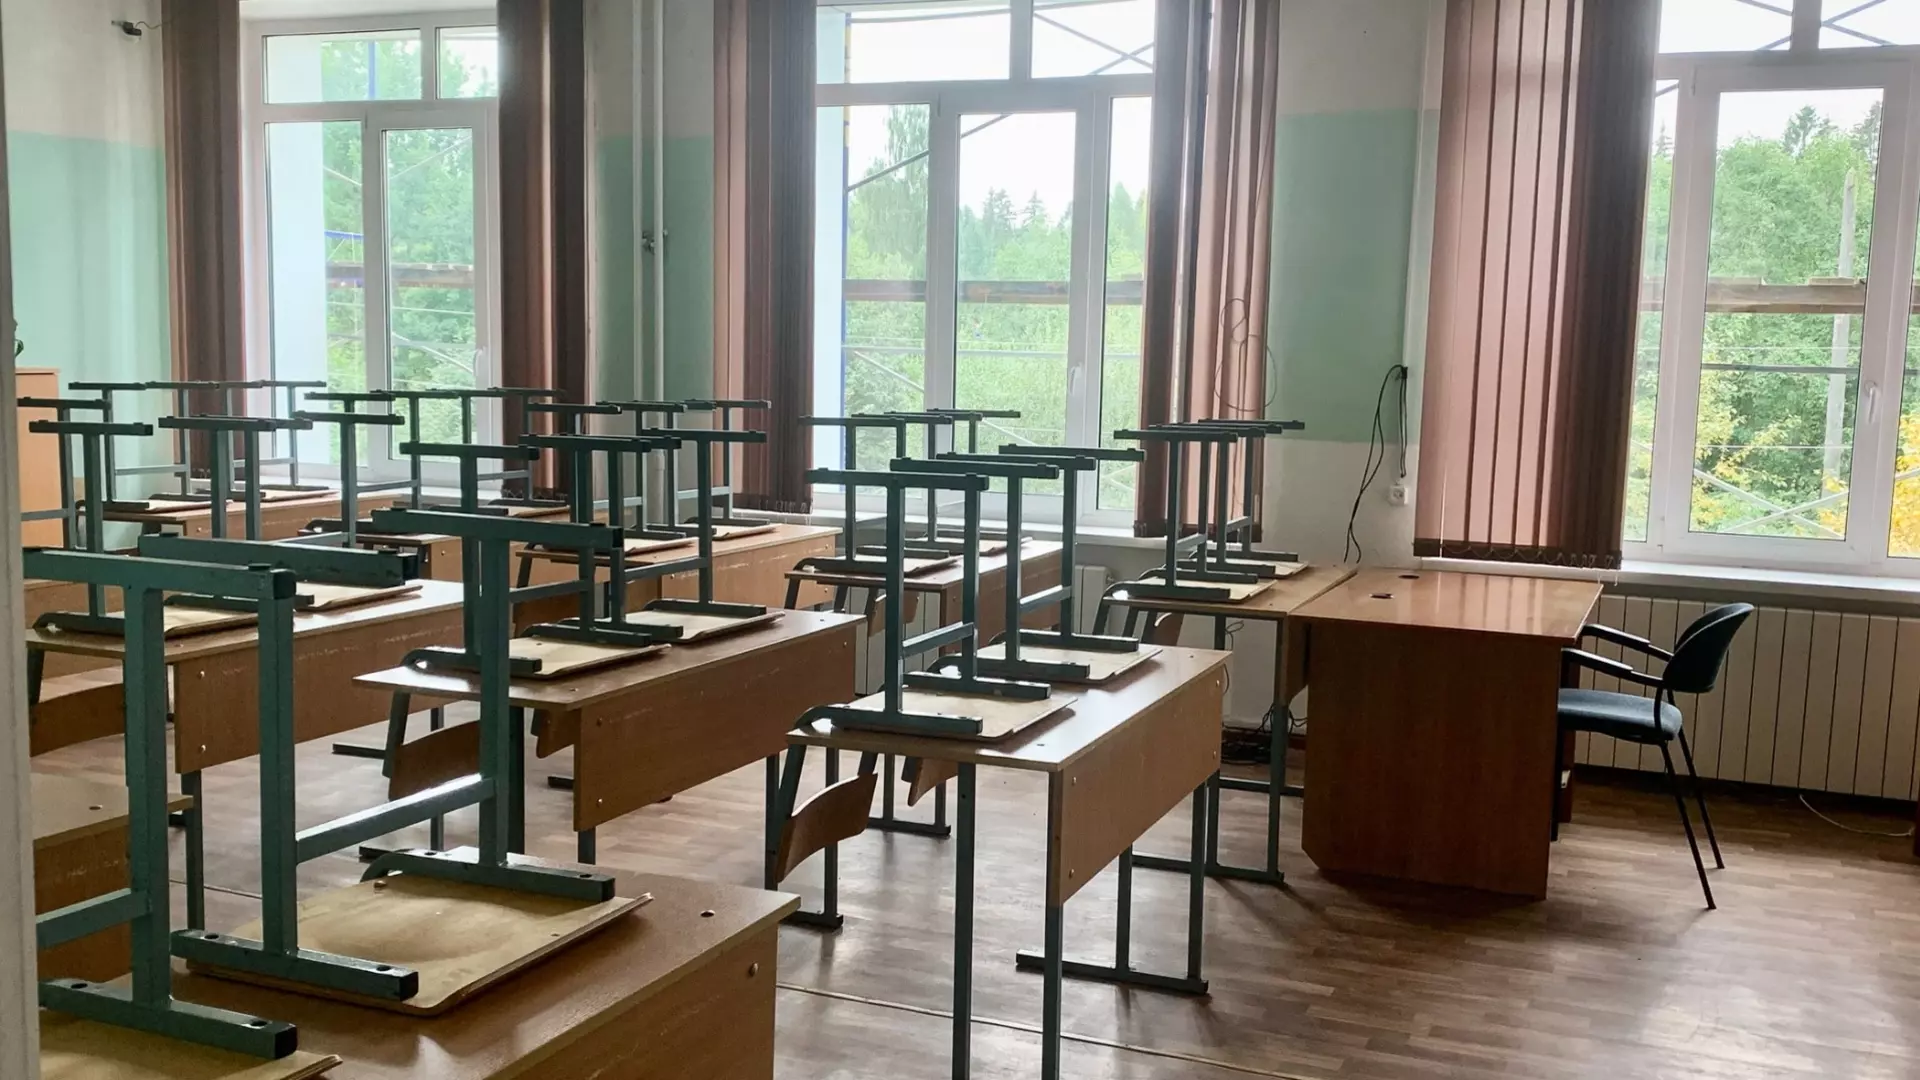 Белгородцы попросили усилить меры безопасности в школах после происшествия в Брянске